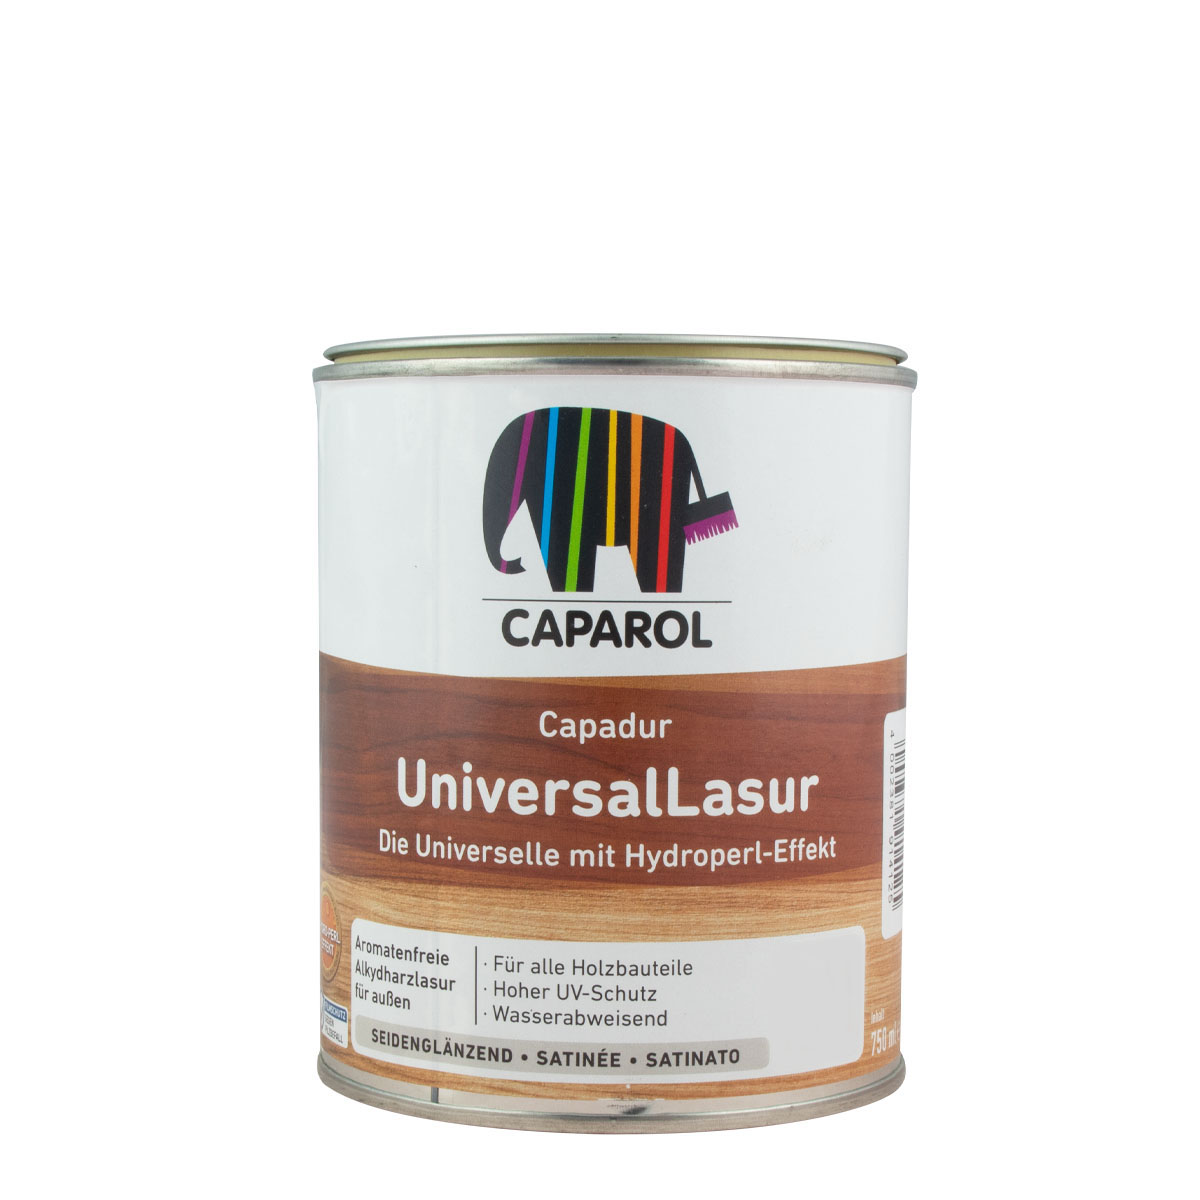 Caparol Capadur Universal Lasur 750ml, Renovierfarbton